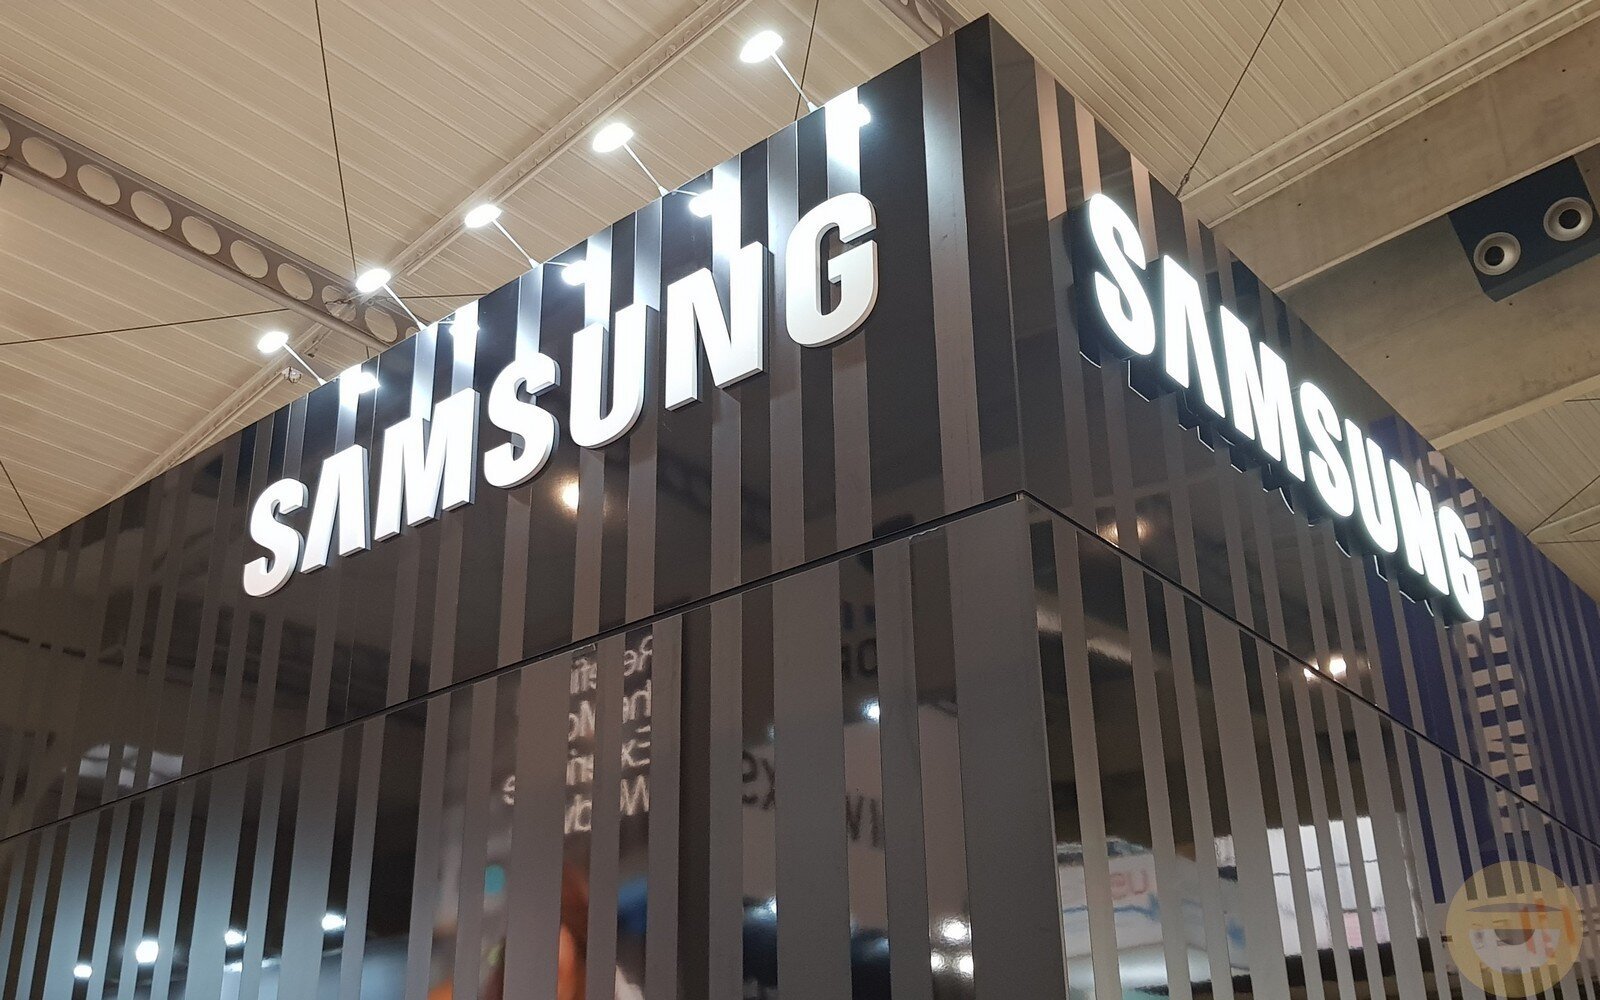 Το δικό της AI γλωσσικό μοντέλο, το Gauss, παρουσιάζει η Samsung, το οποίο θα ενσωματωθεί στις συσκευές της